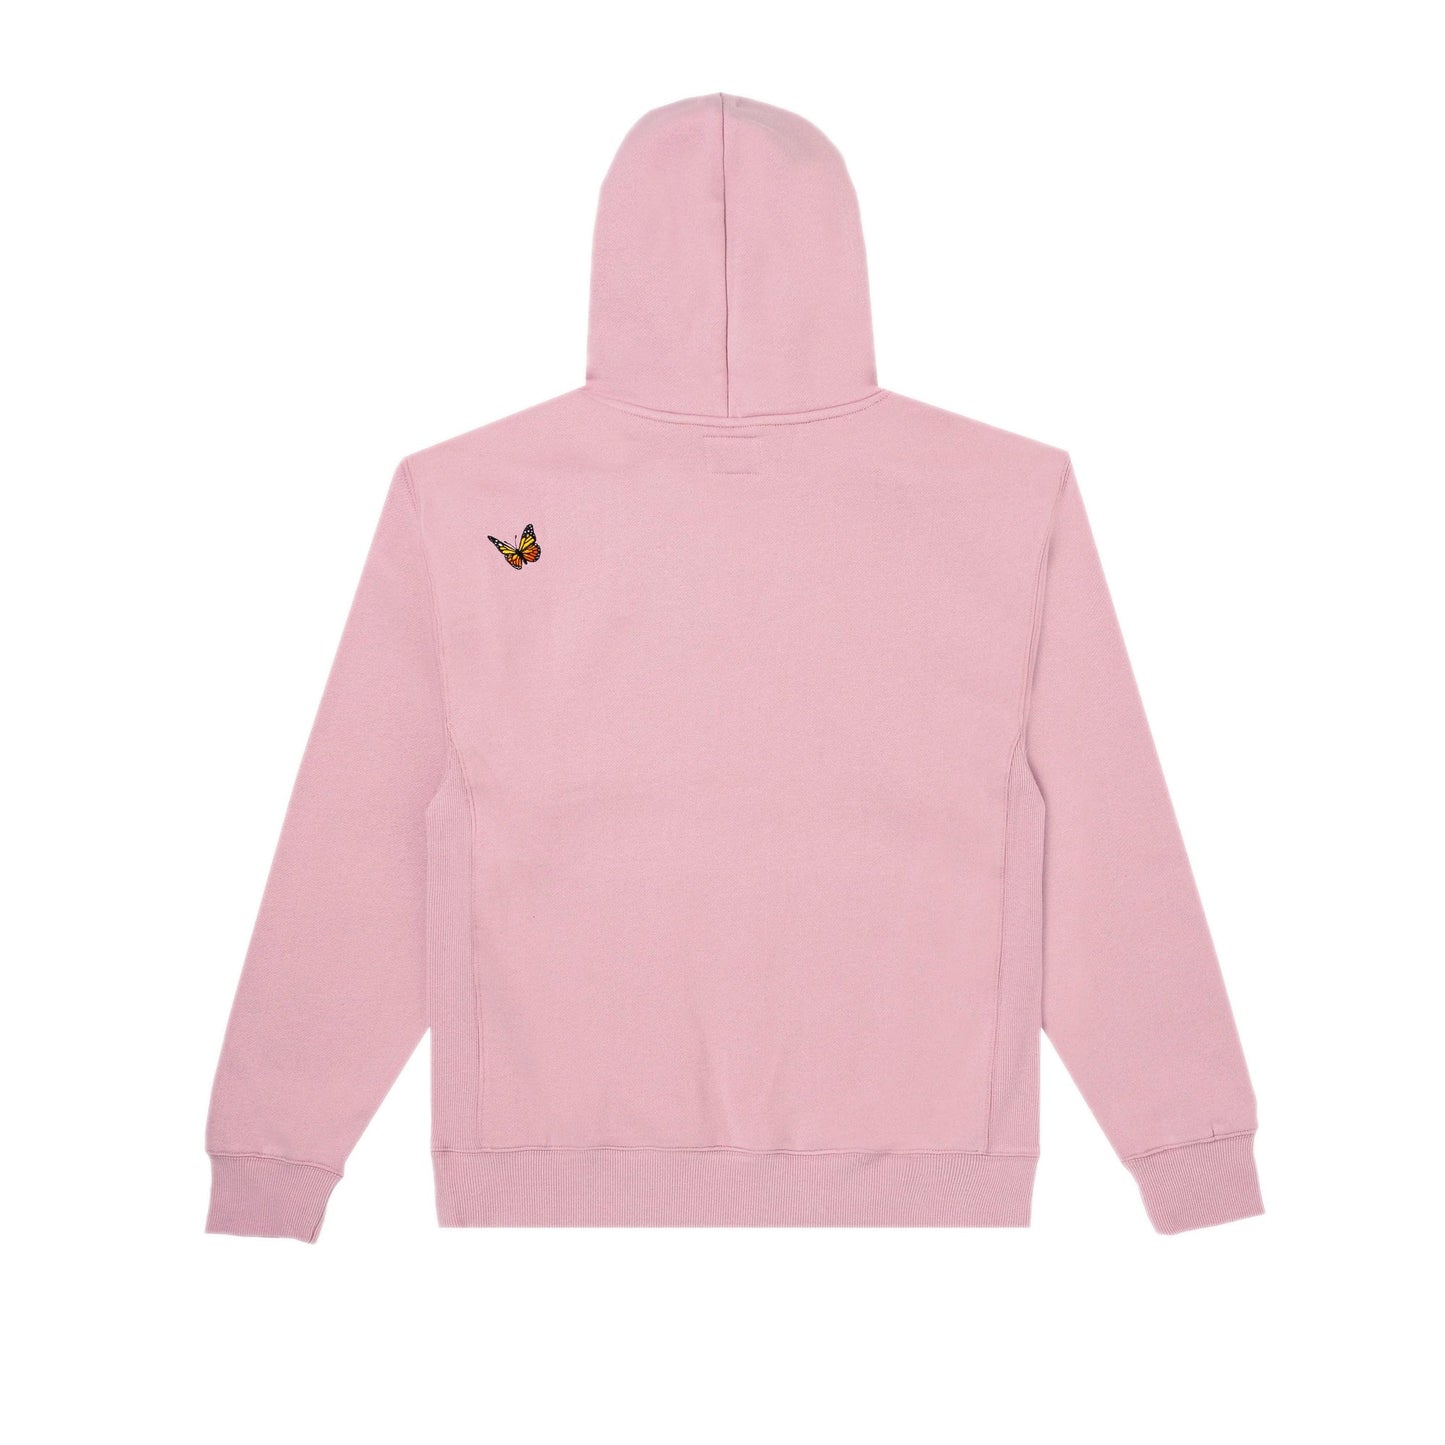 Felt hoodie pink